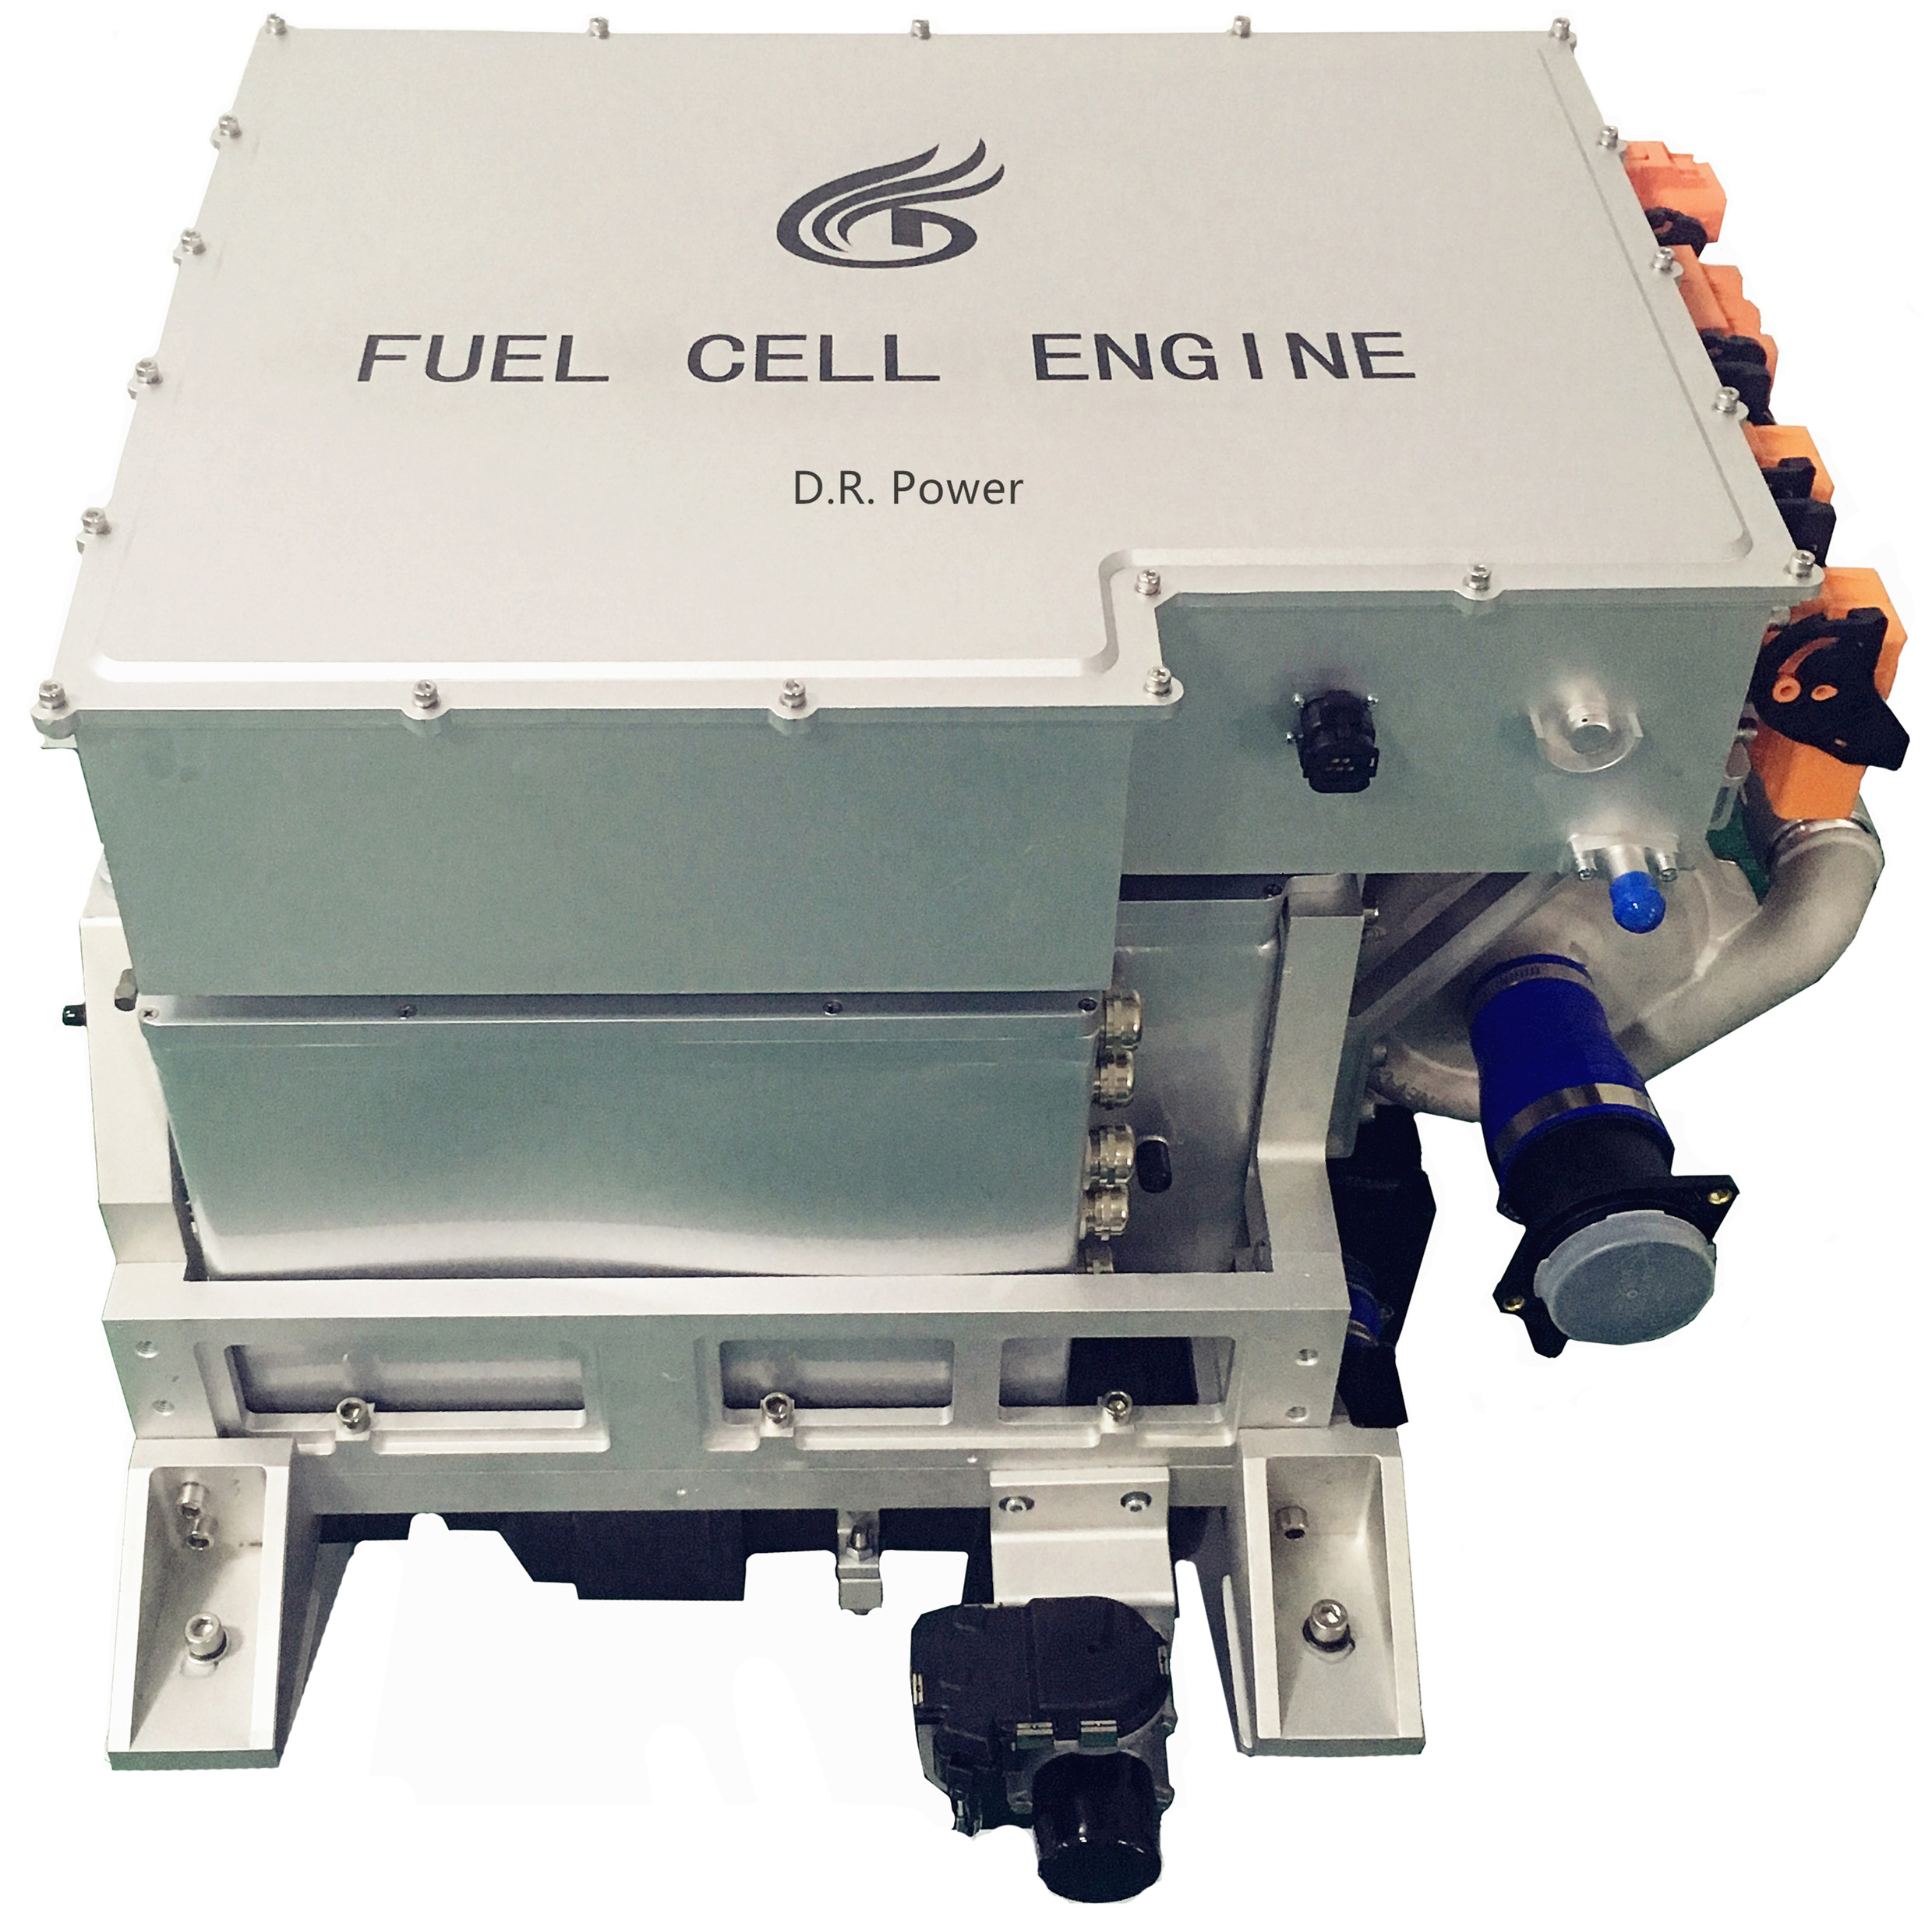 德燃动力发布30kw级氢燃料电池发动机